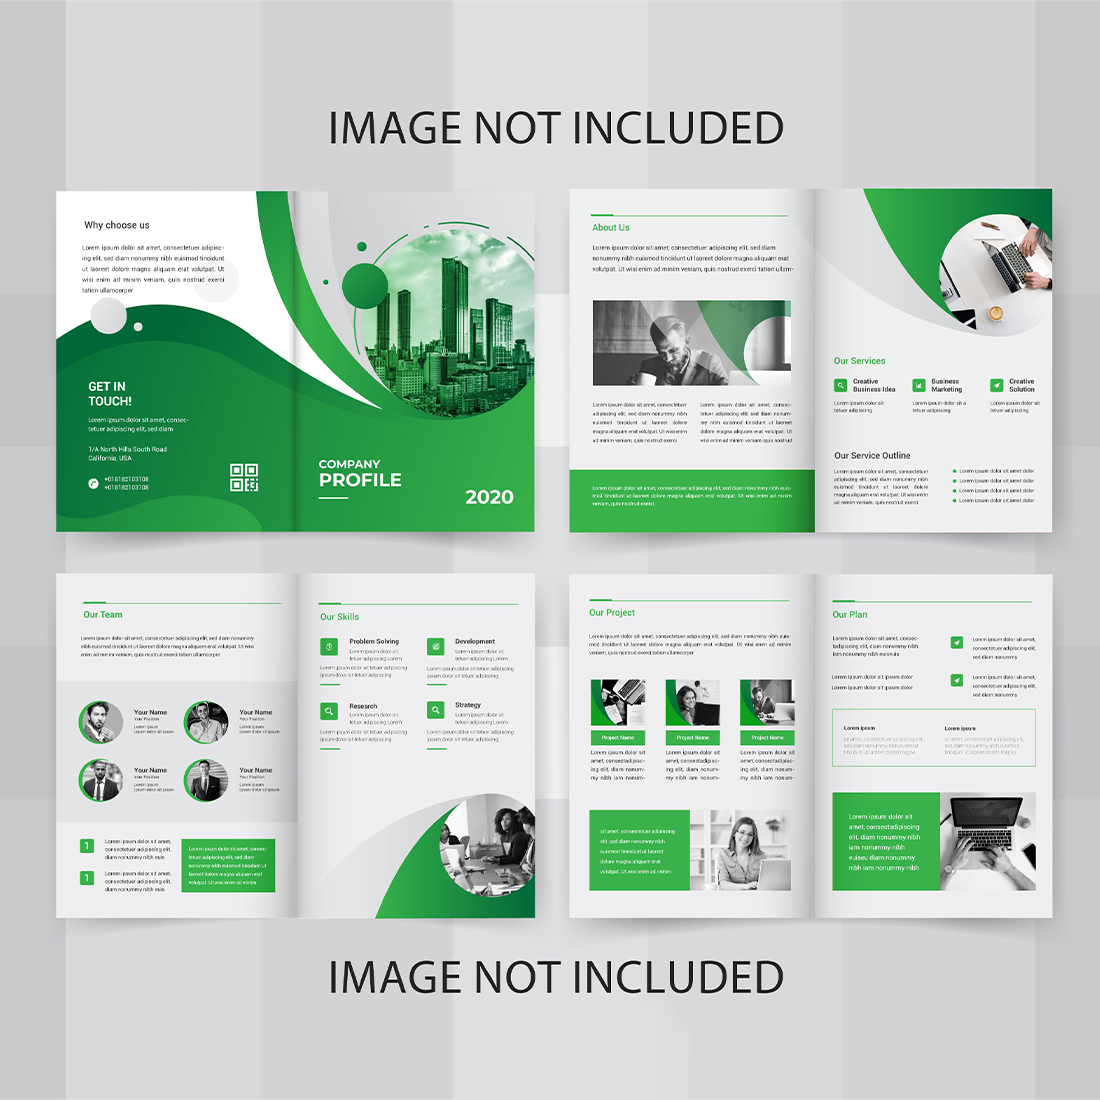 Vector creative company profile template design cover image.